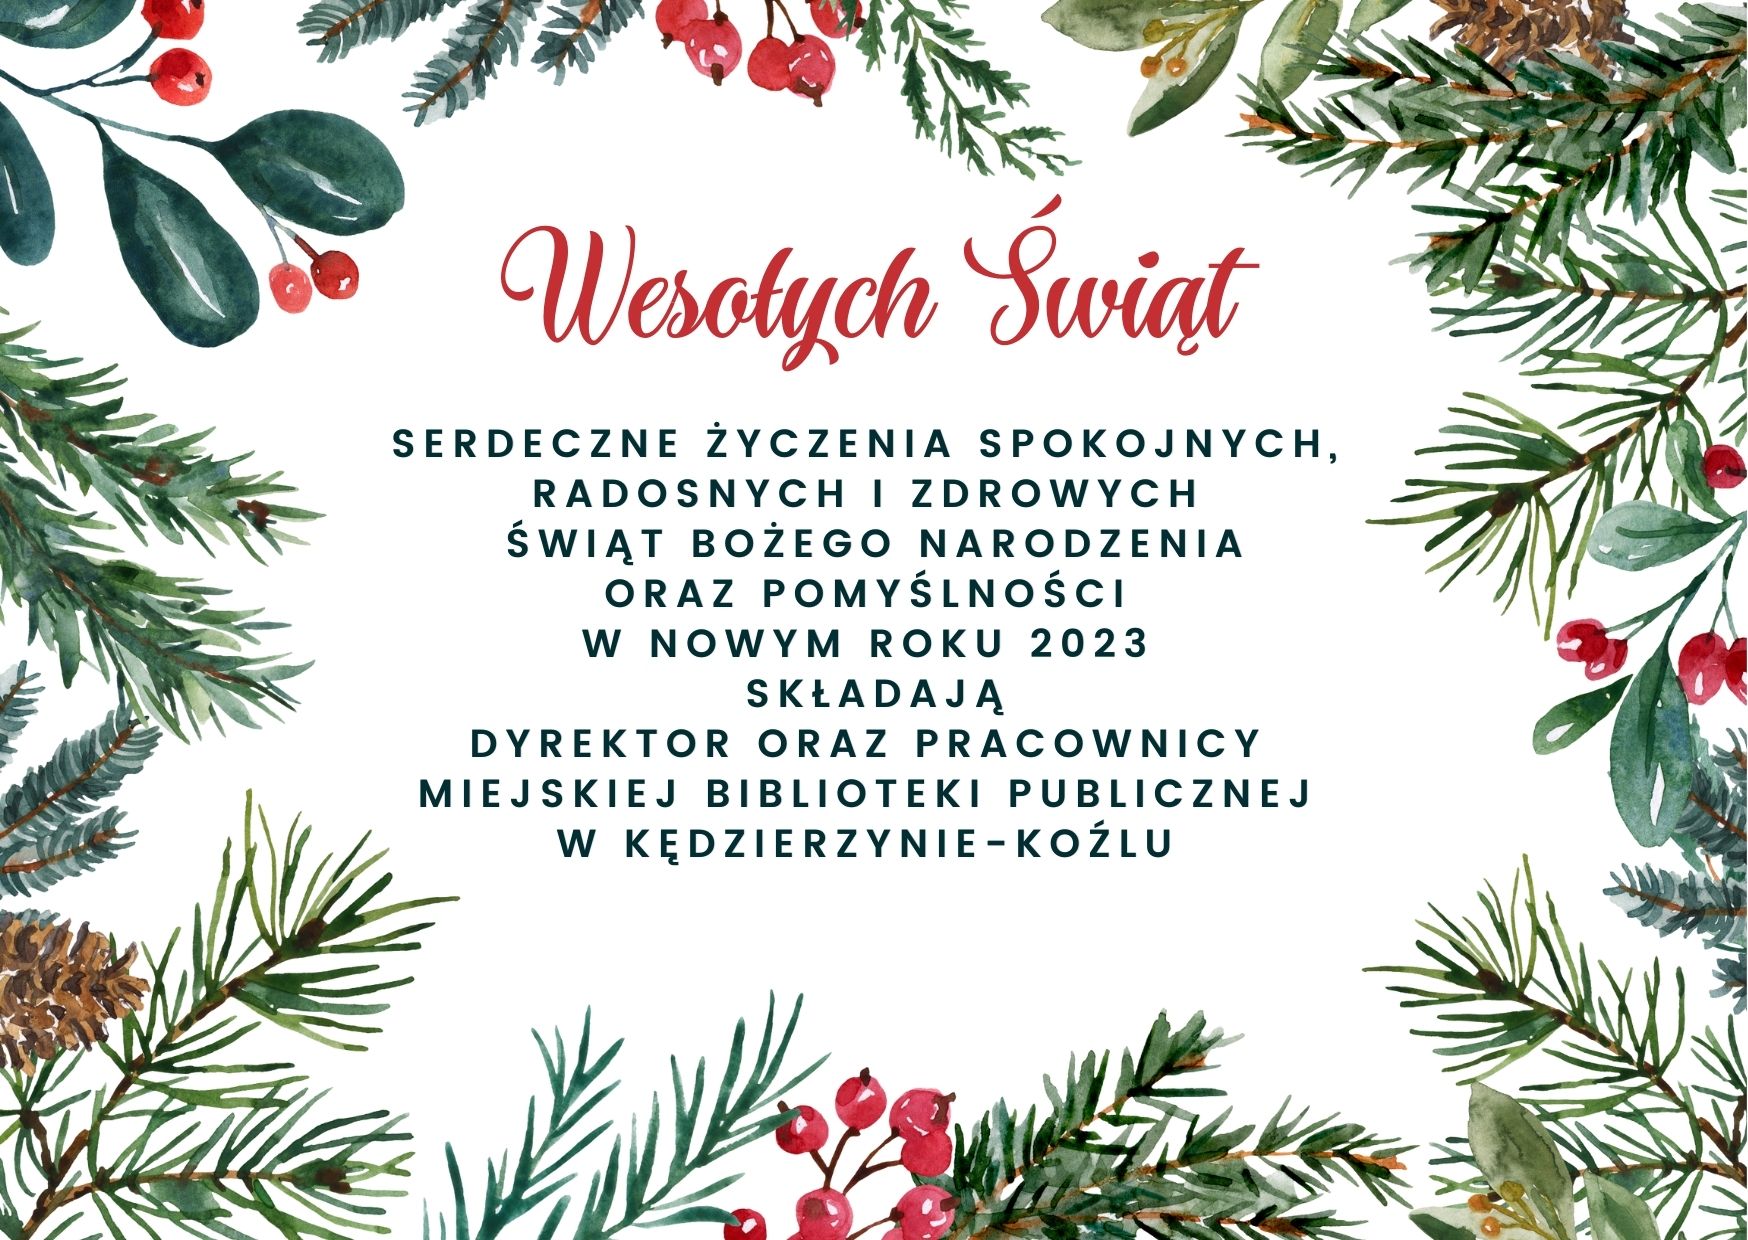 Serdeczne życzenia radosnych, zdrowych i spokojnych Świąt Bożego Narodzenia oraz pomyślności w Nowym Roku 2023 składają Dyrektor oraz Pracownicy Miejskiej Biblioteki Publicznej w Kędzierzynie-Koźlu